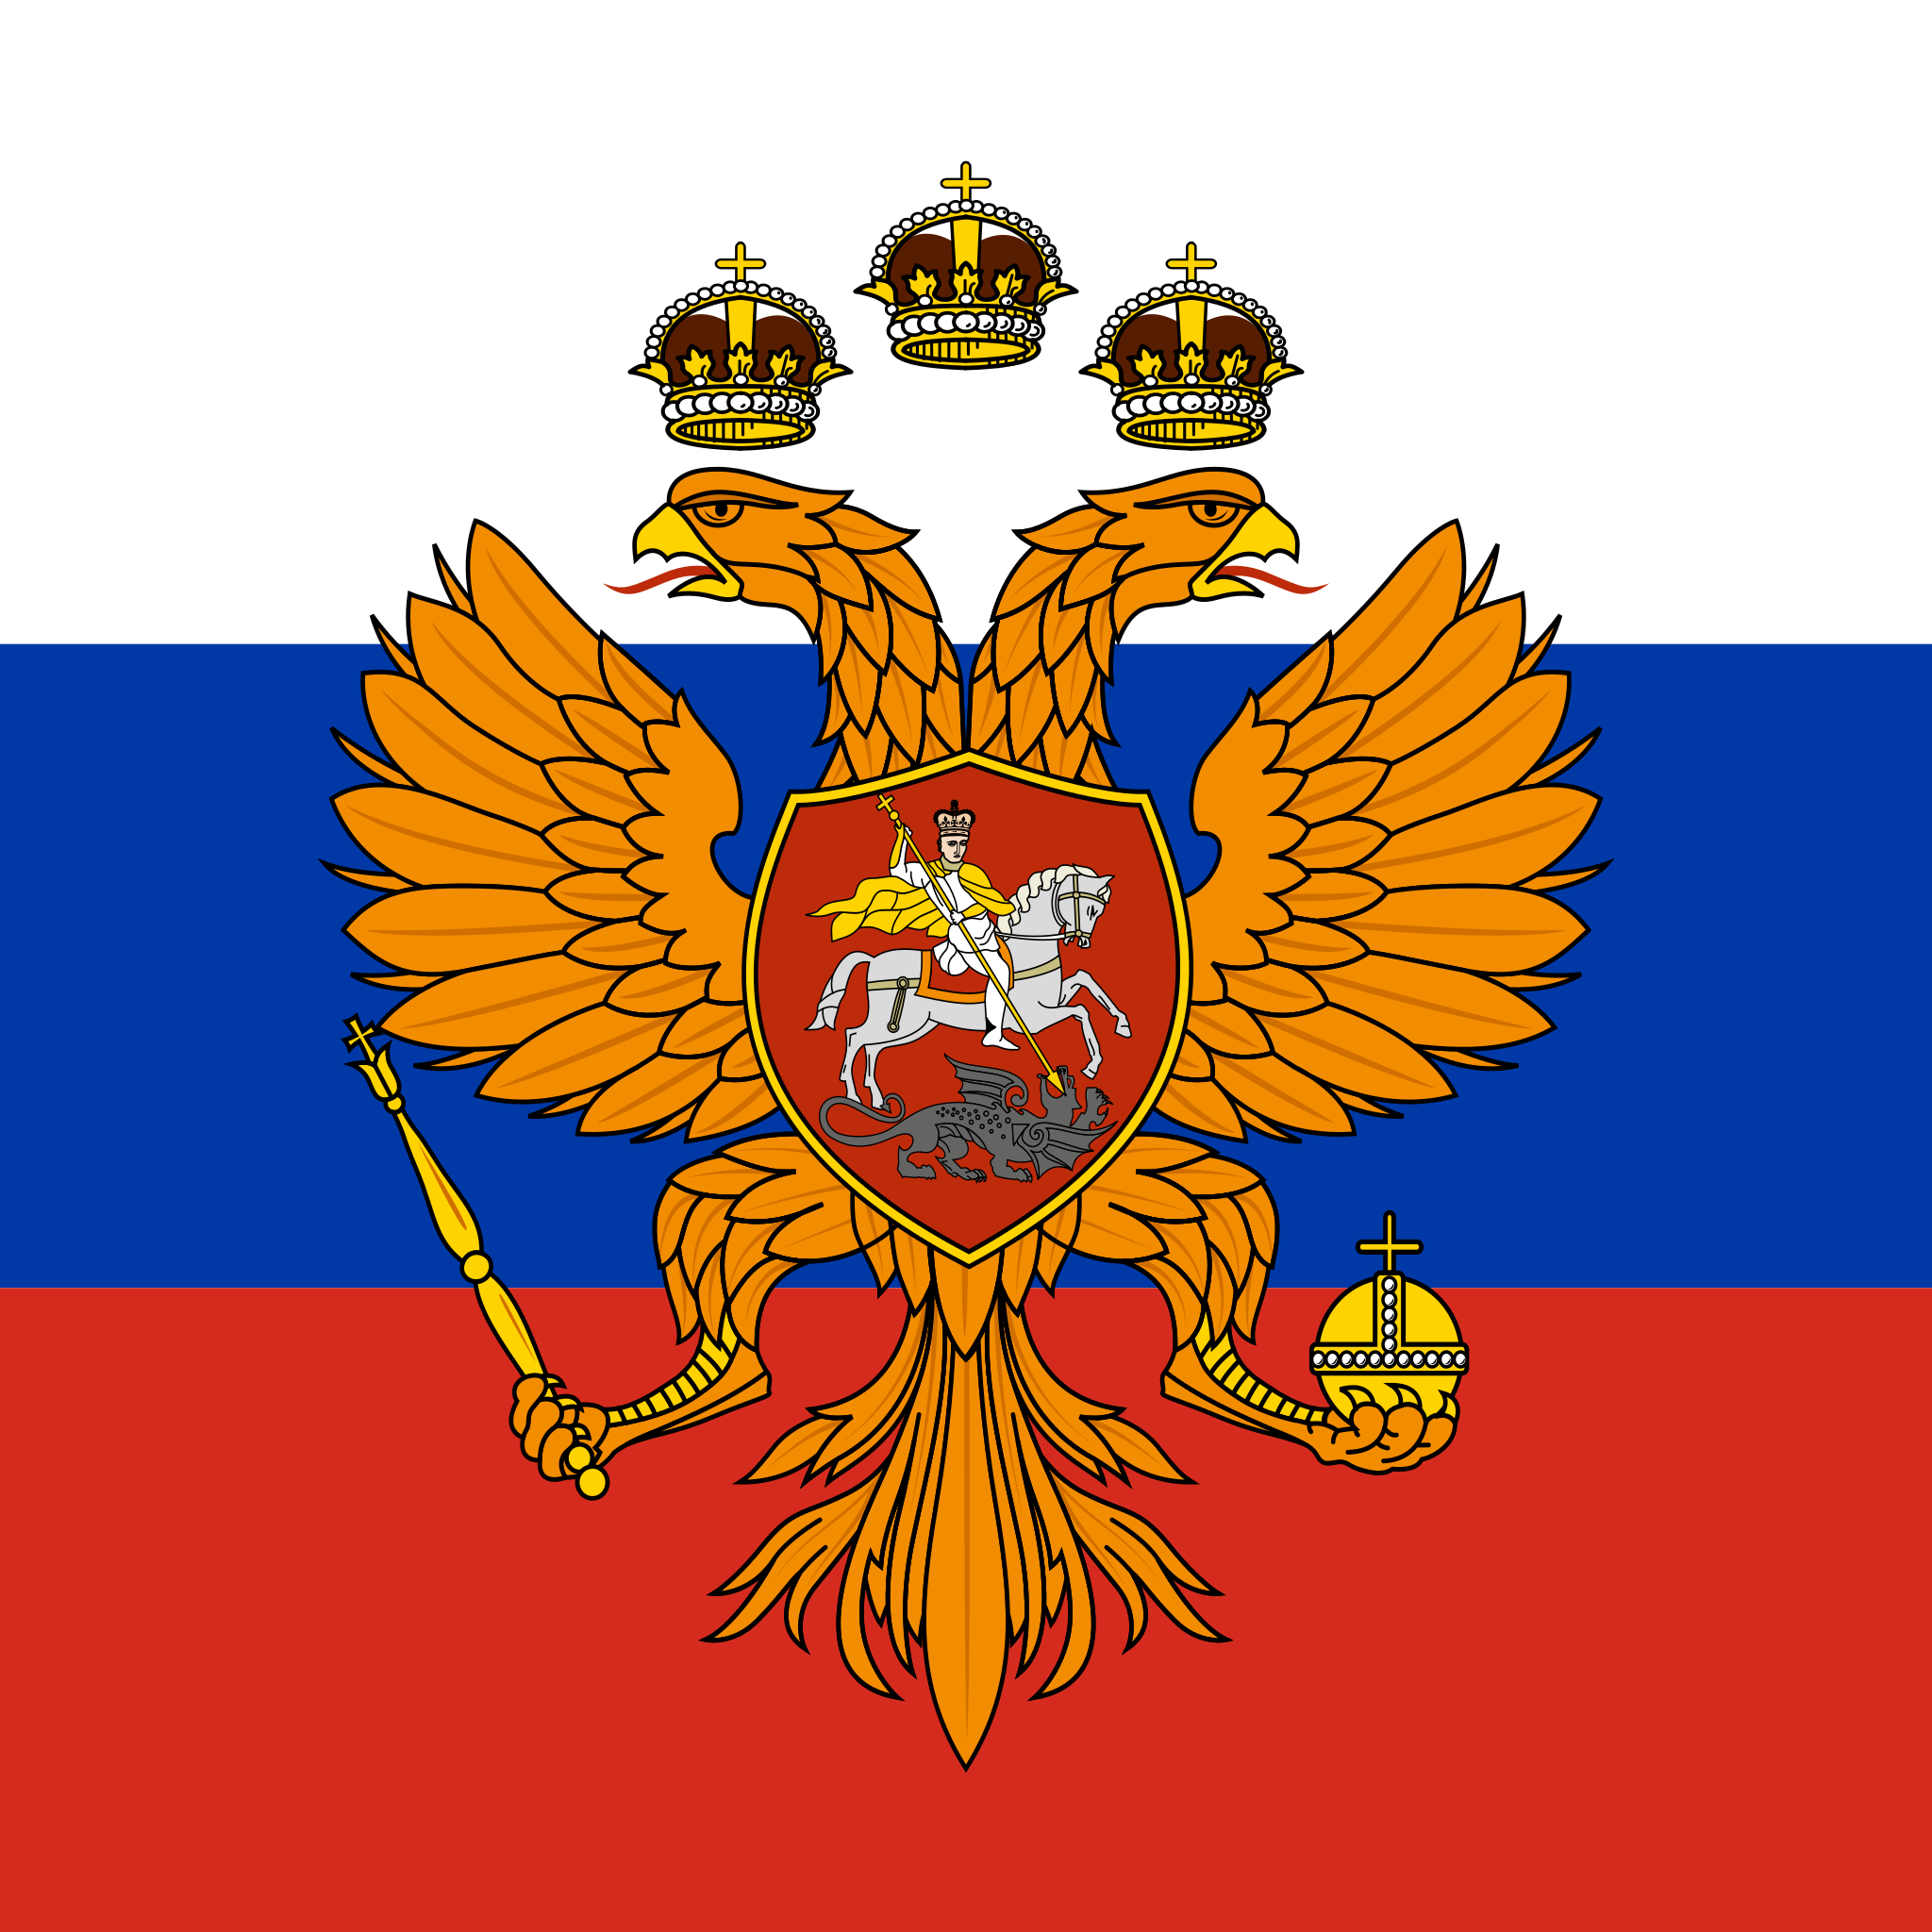 俄罗斯为什么在 1993 年更改国旗? 